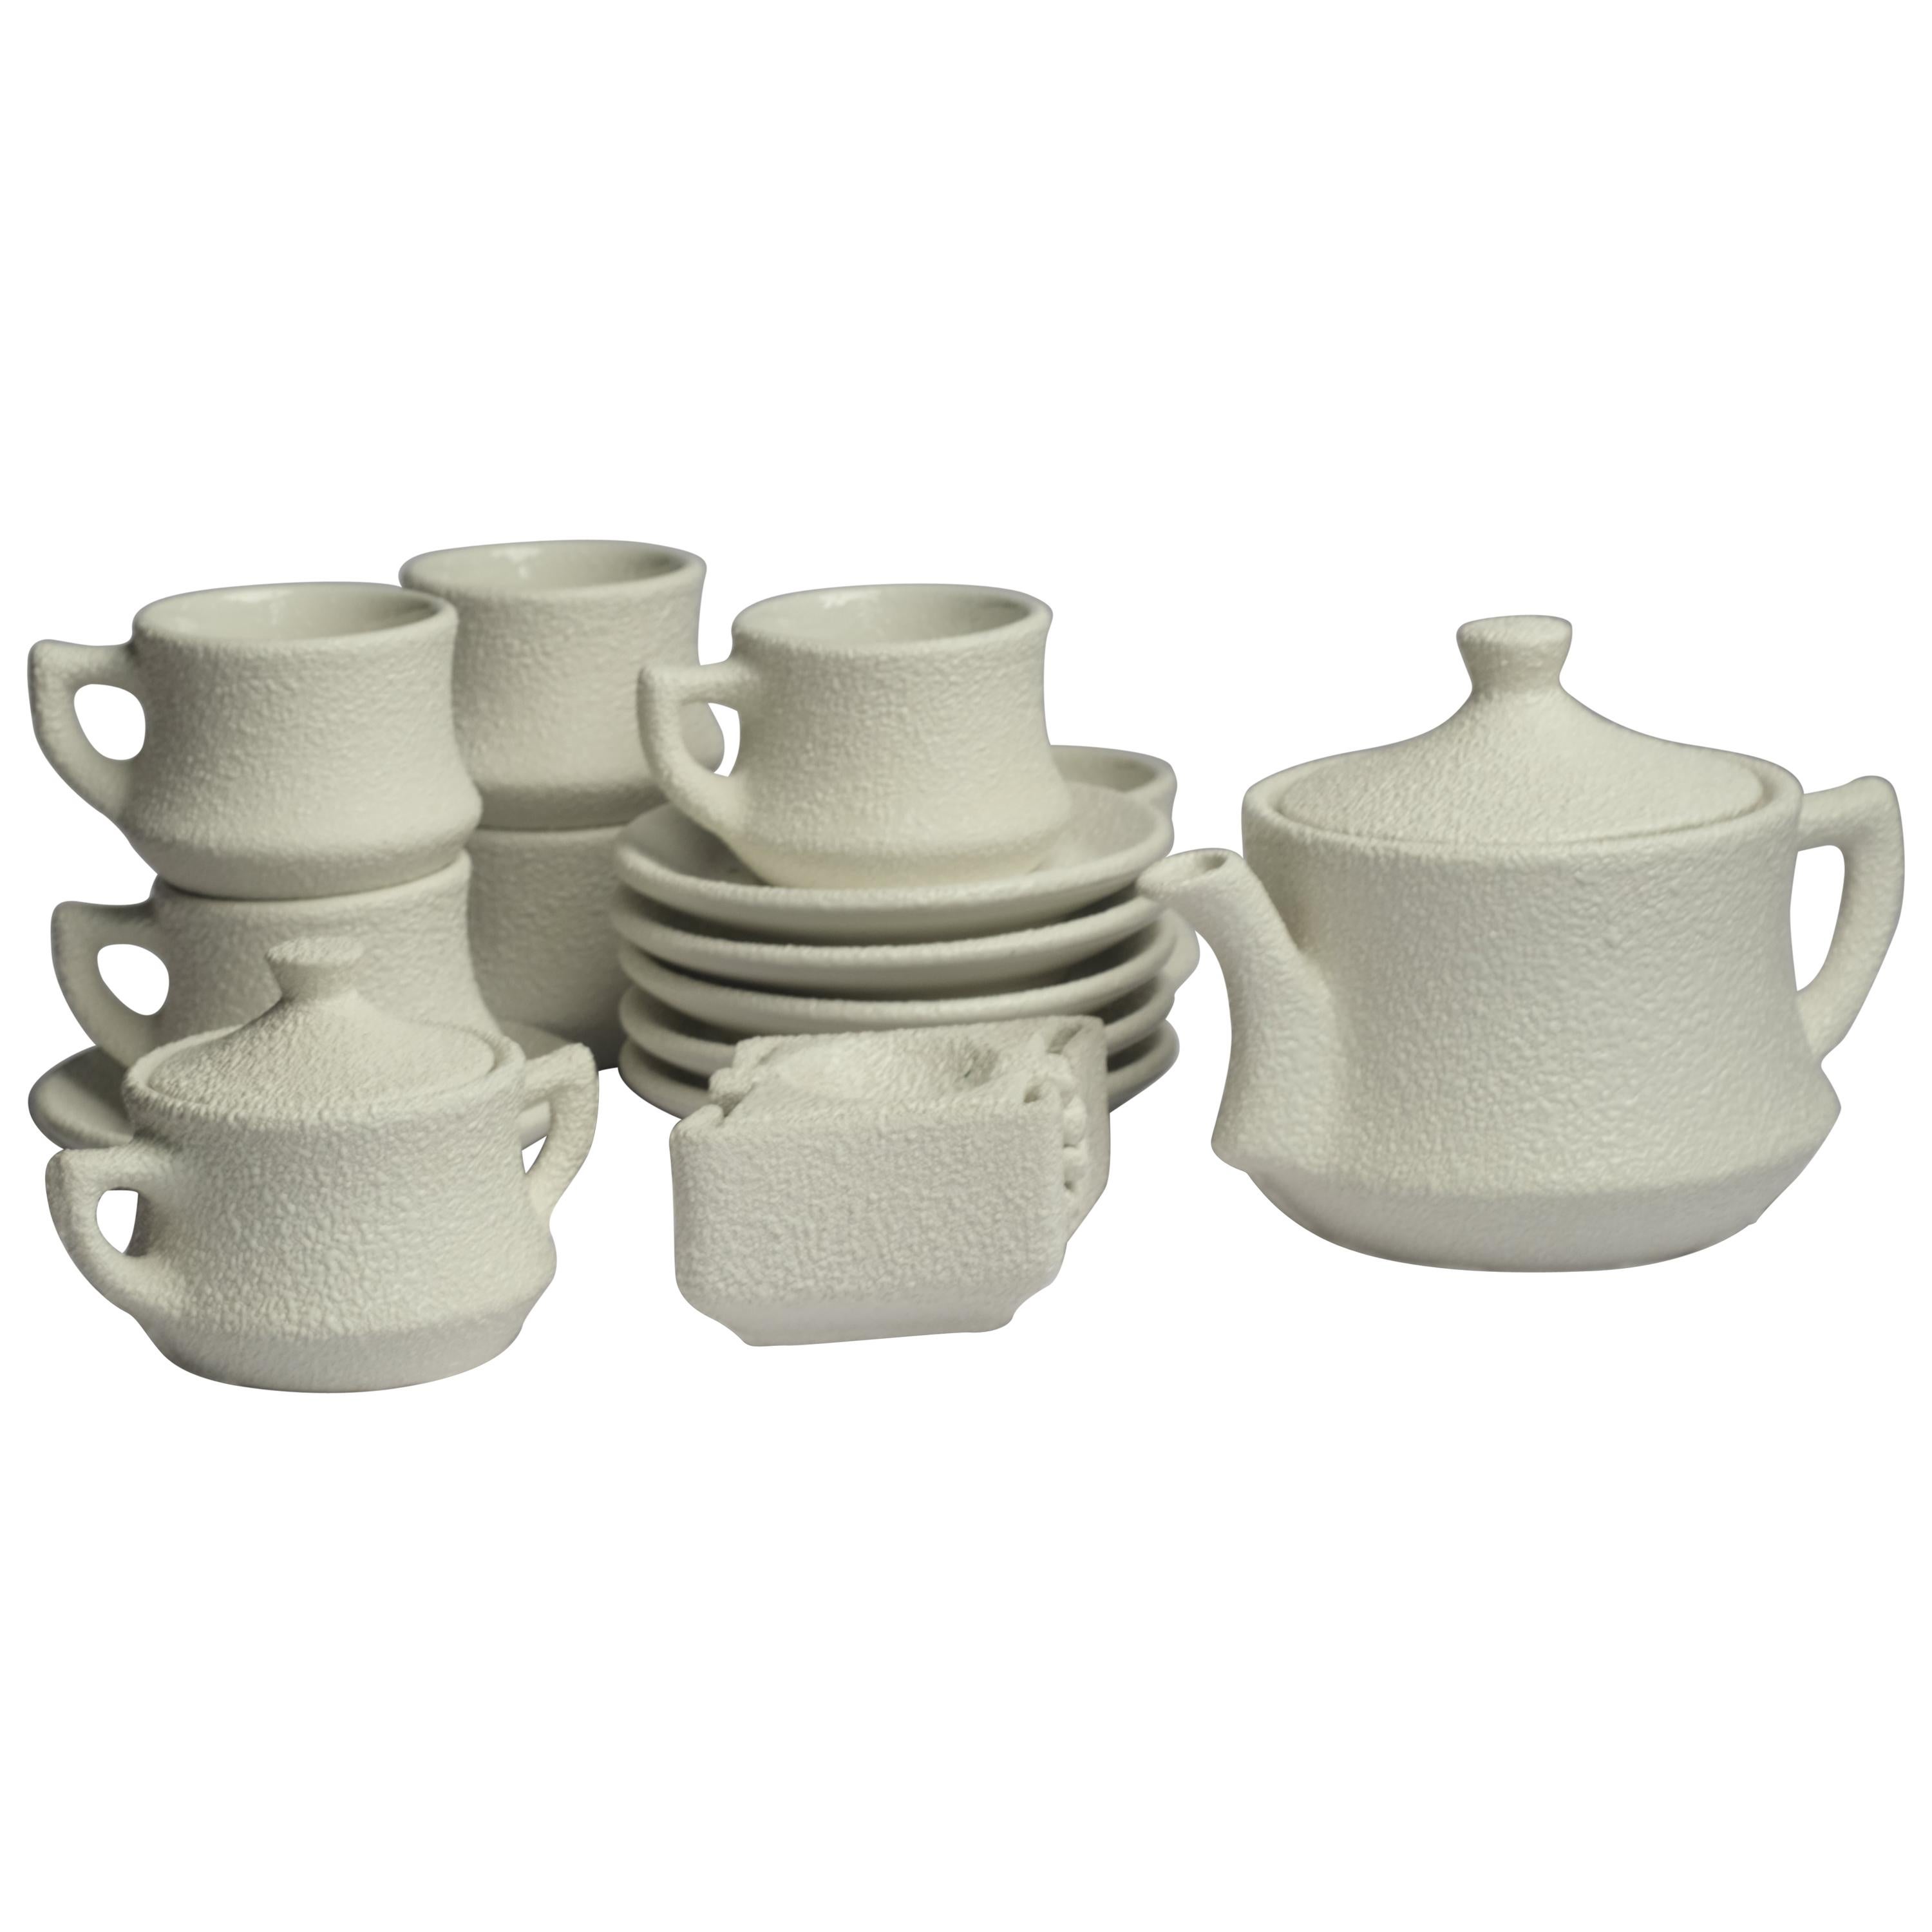 Modernes Keramik-Couchtisch-/Tee-Set in Sand texturierter Stuck-Finish